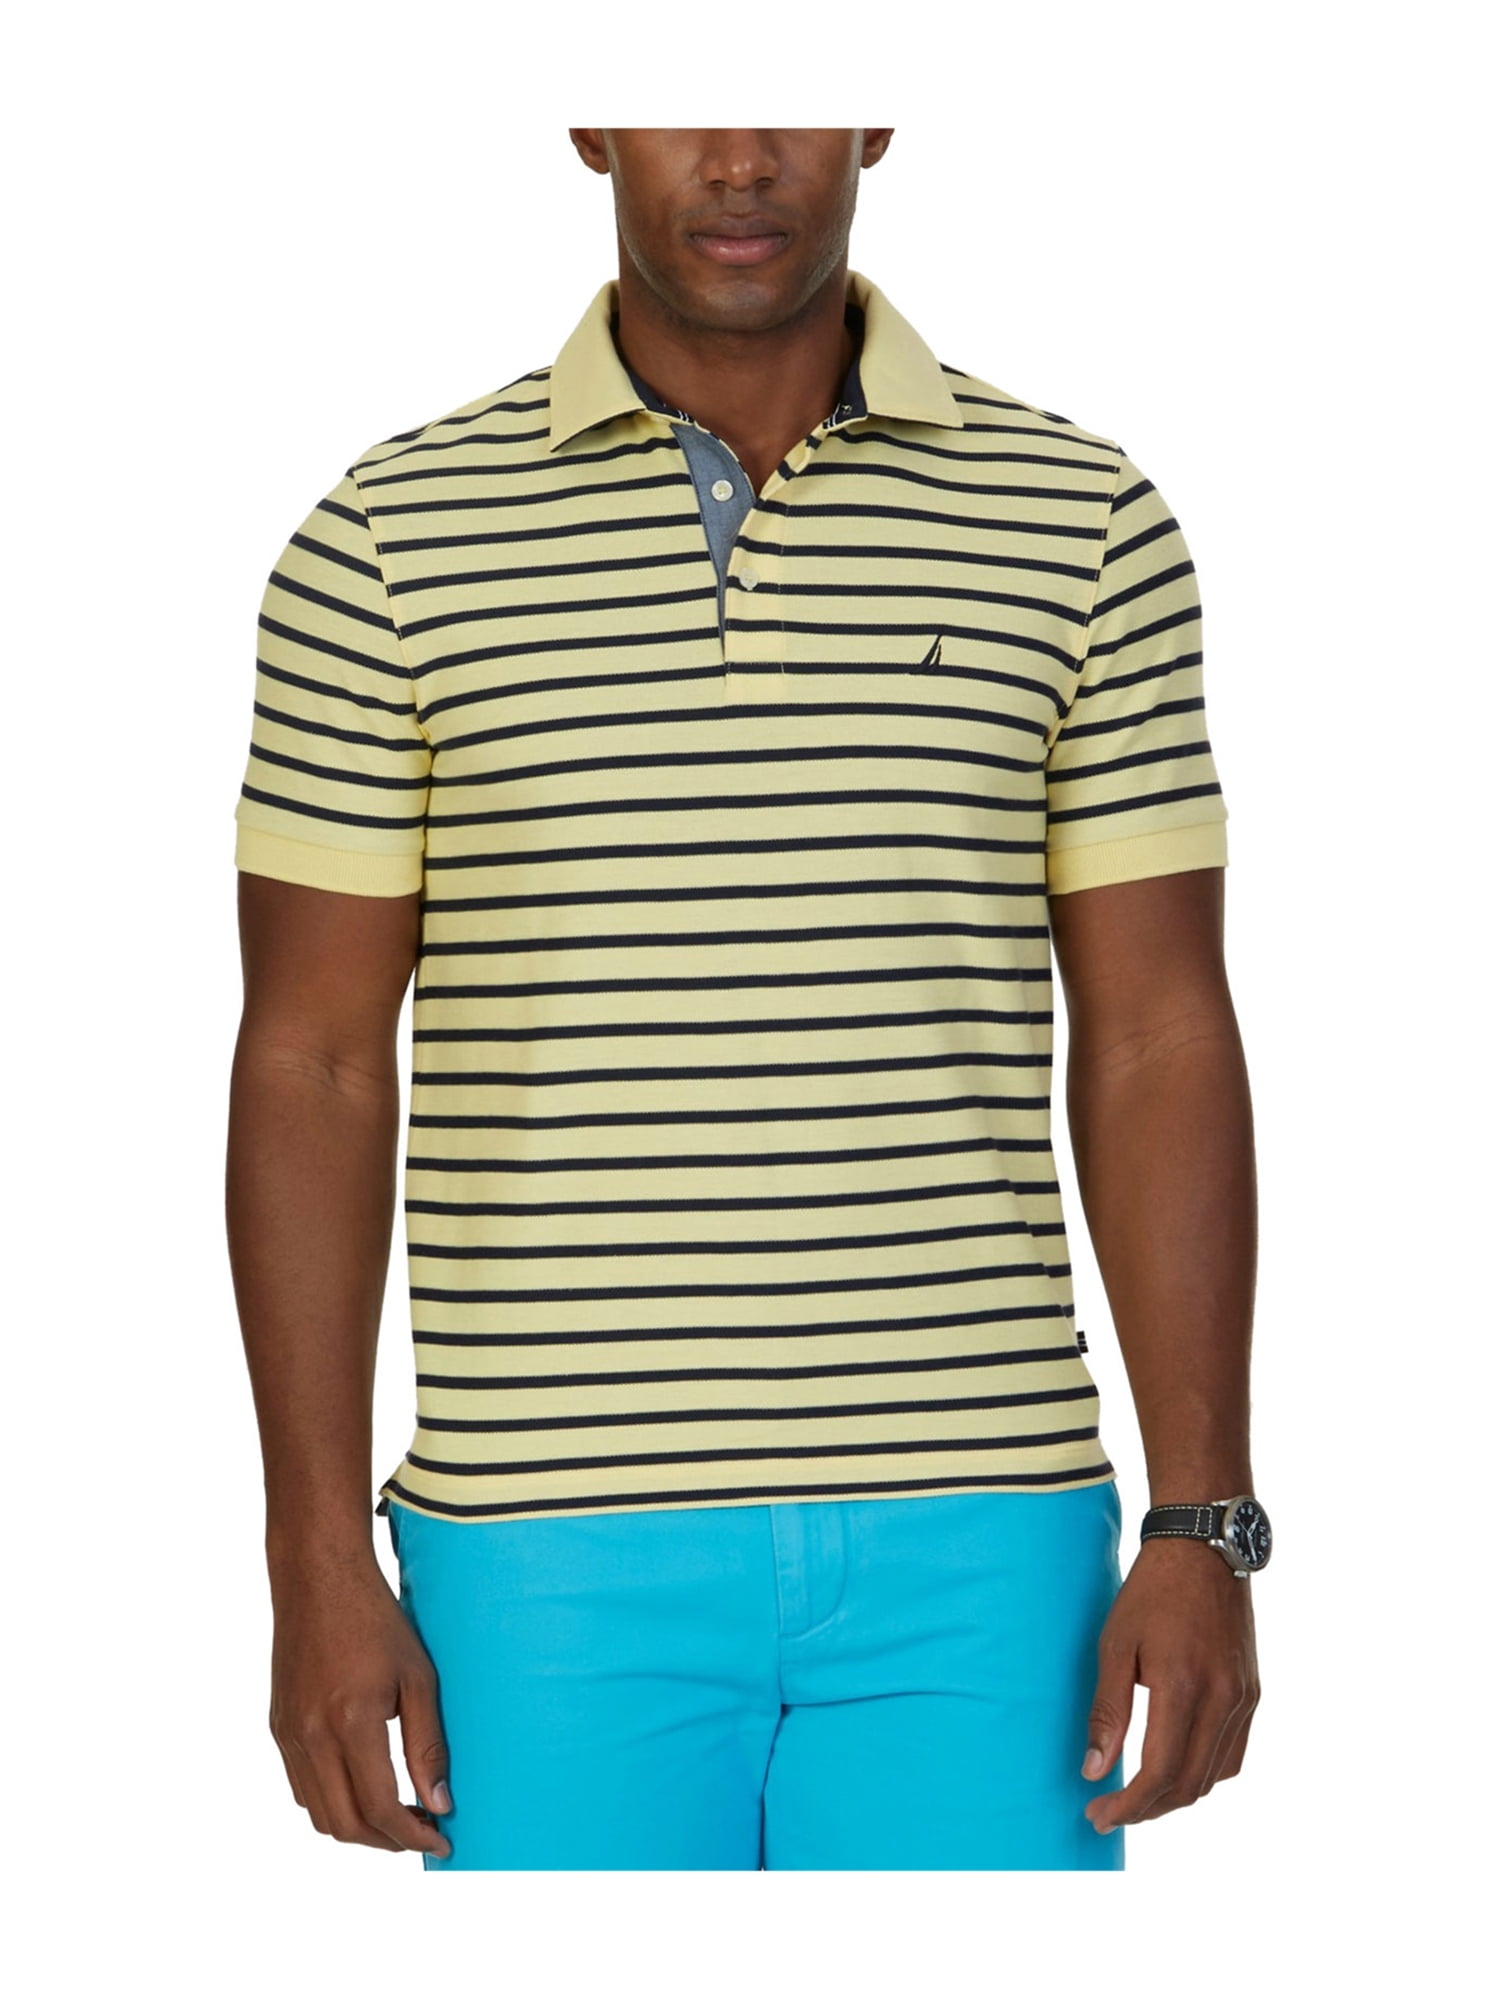 Nautica Mens Striped Rugby Polo Shirt - Walmart.com